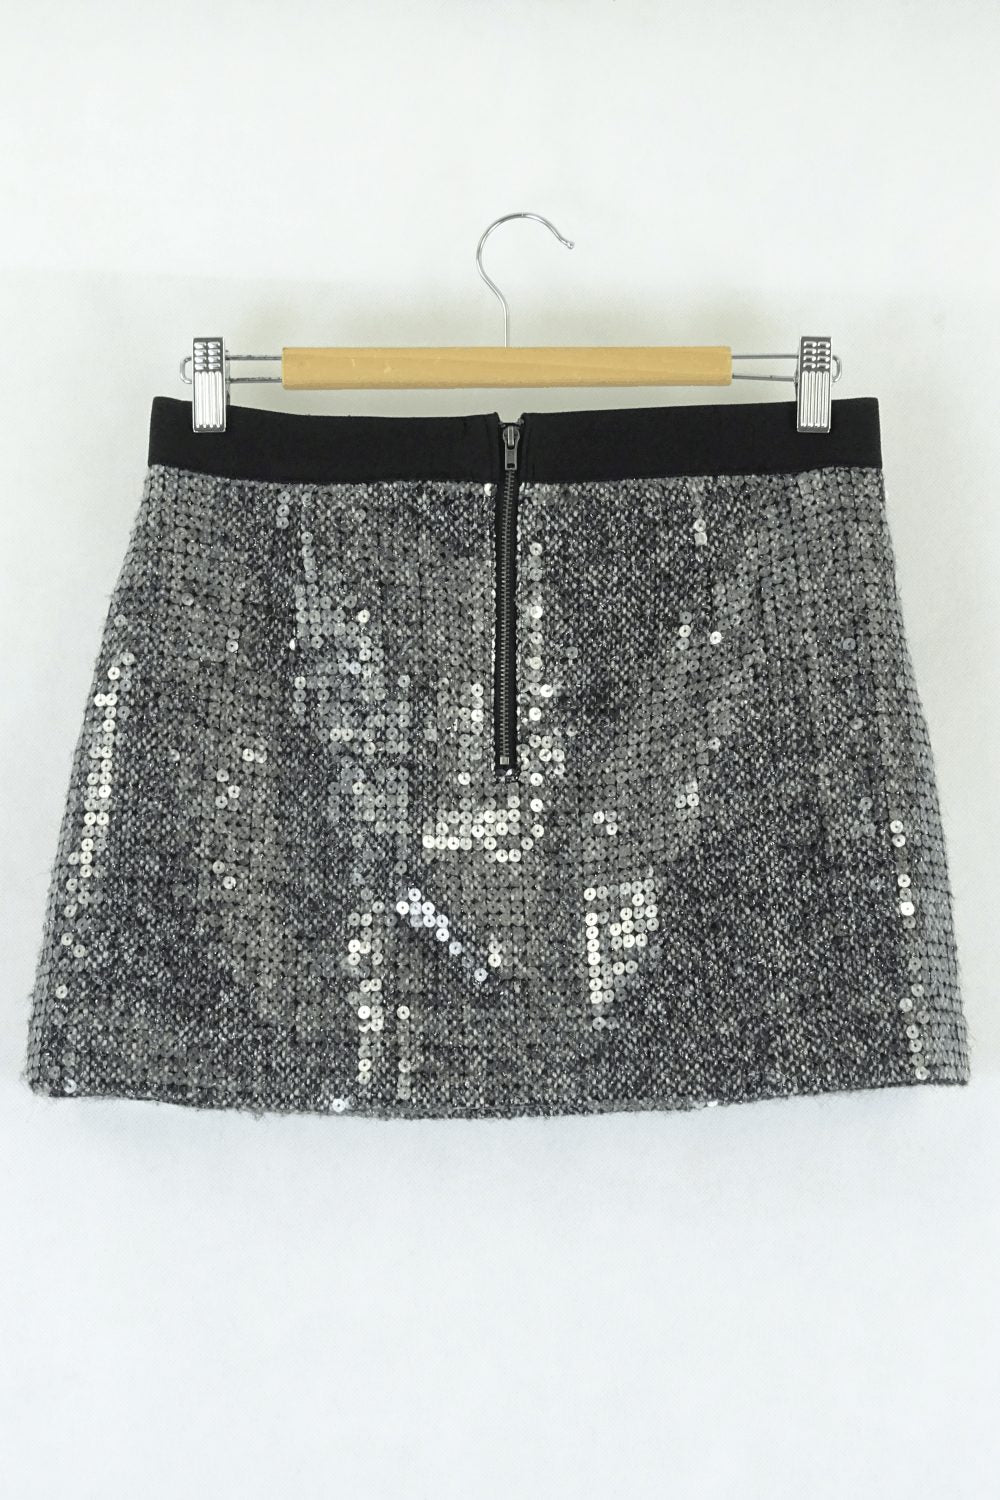 Topshop Sequin Skirt 12